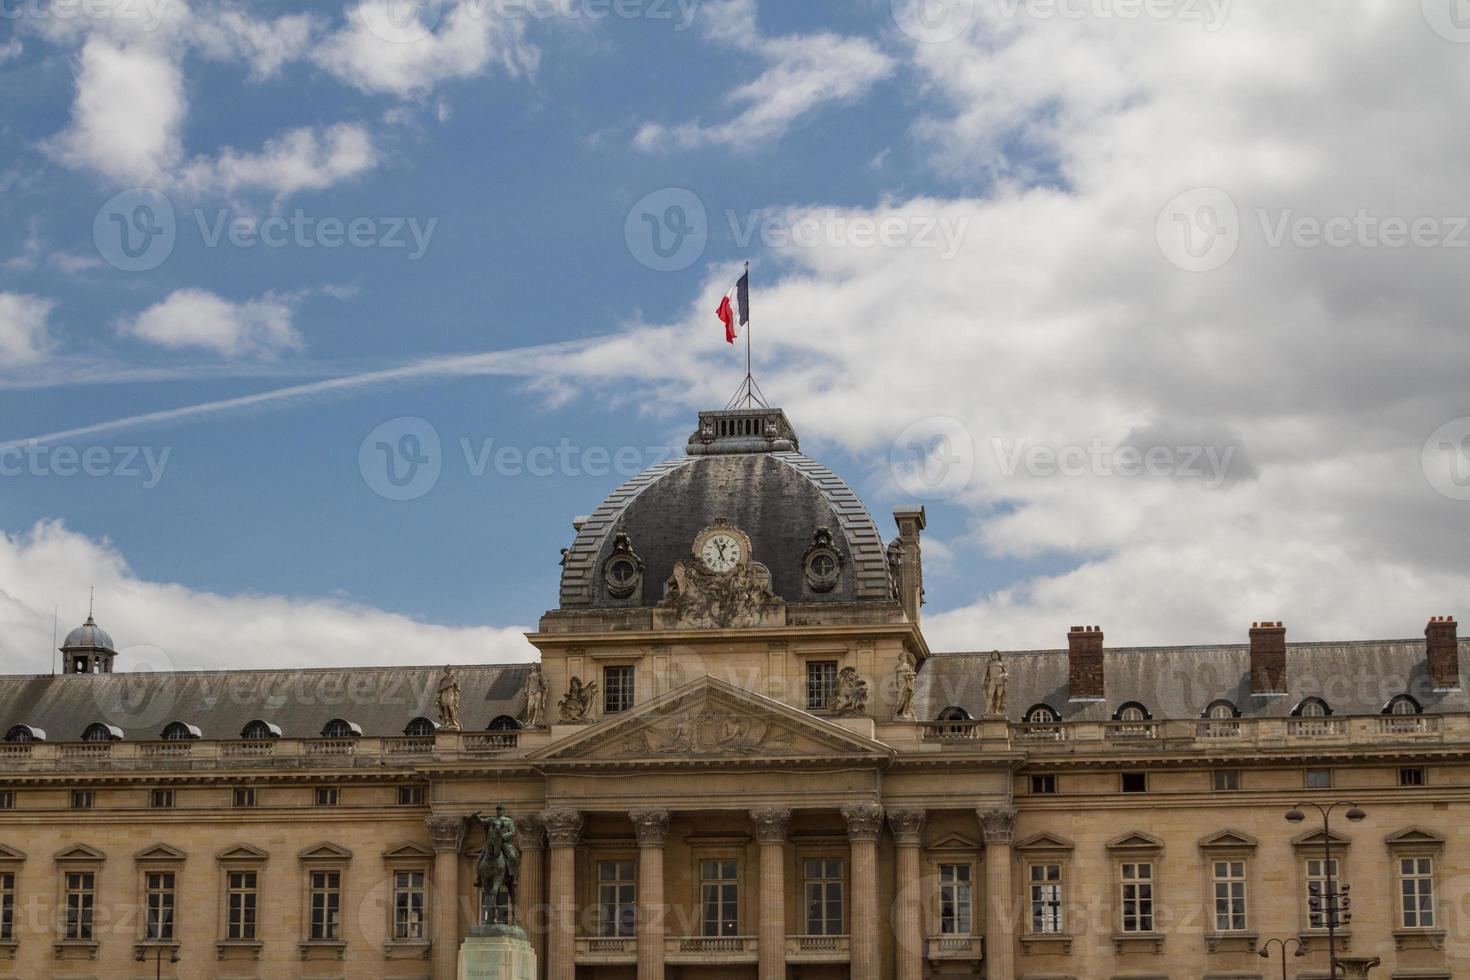 edificio historico en paris francia foto